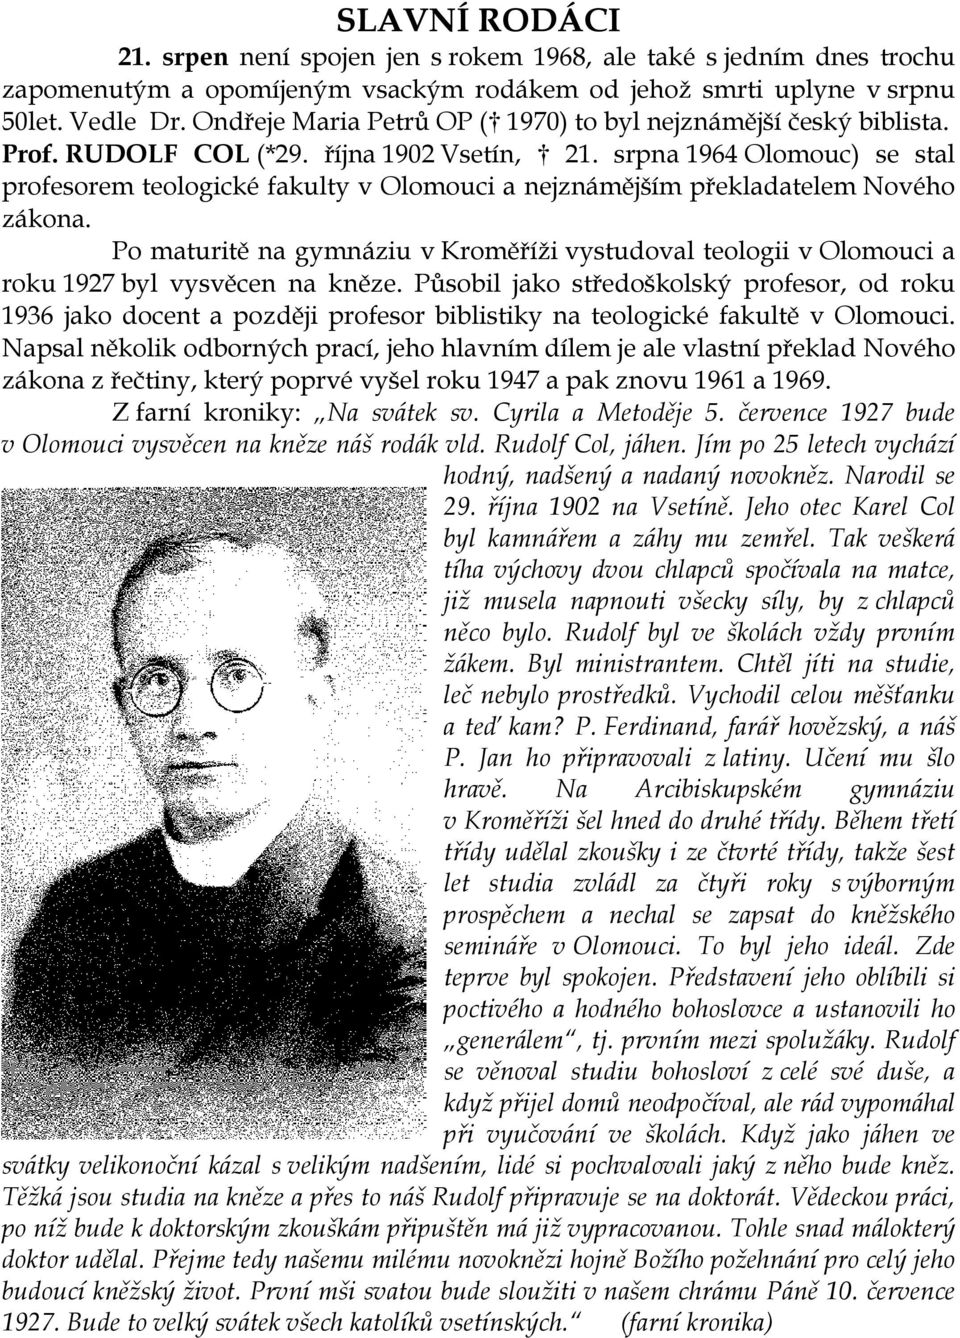 srpna 1964 Olomouc) se stal profesorem teologické fakulty v Olomouci a nejznámějším překladatelem Nového zákona.